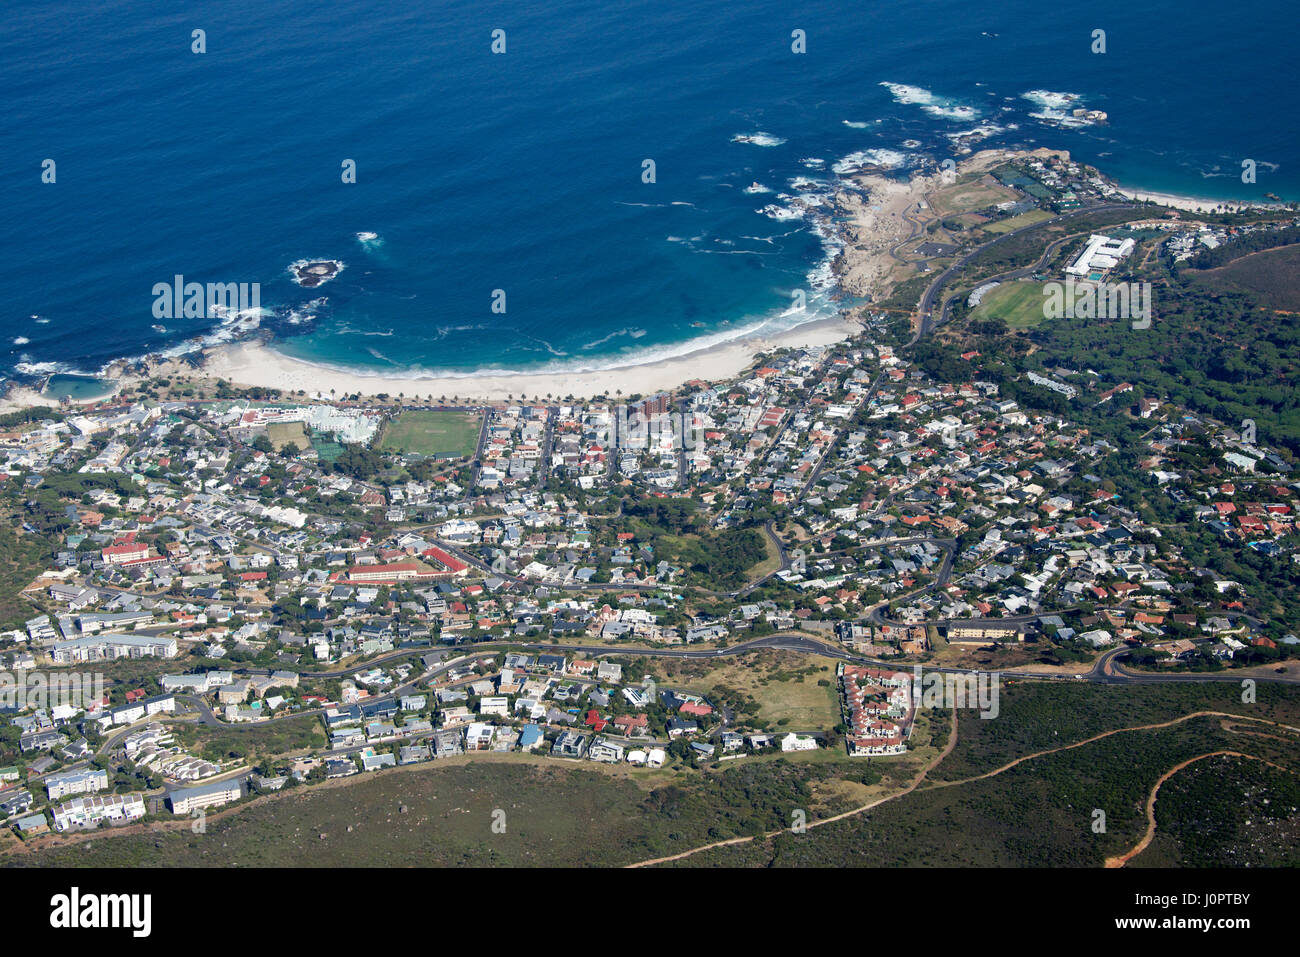 Vue aérienne de la plage de Camps Bay et de Table Mountain Cape Town Afrique du Sud Banque D'Images